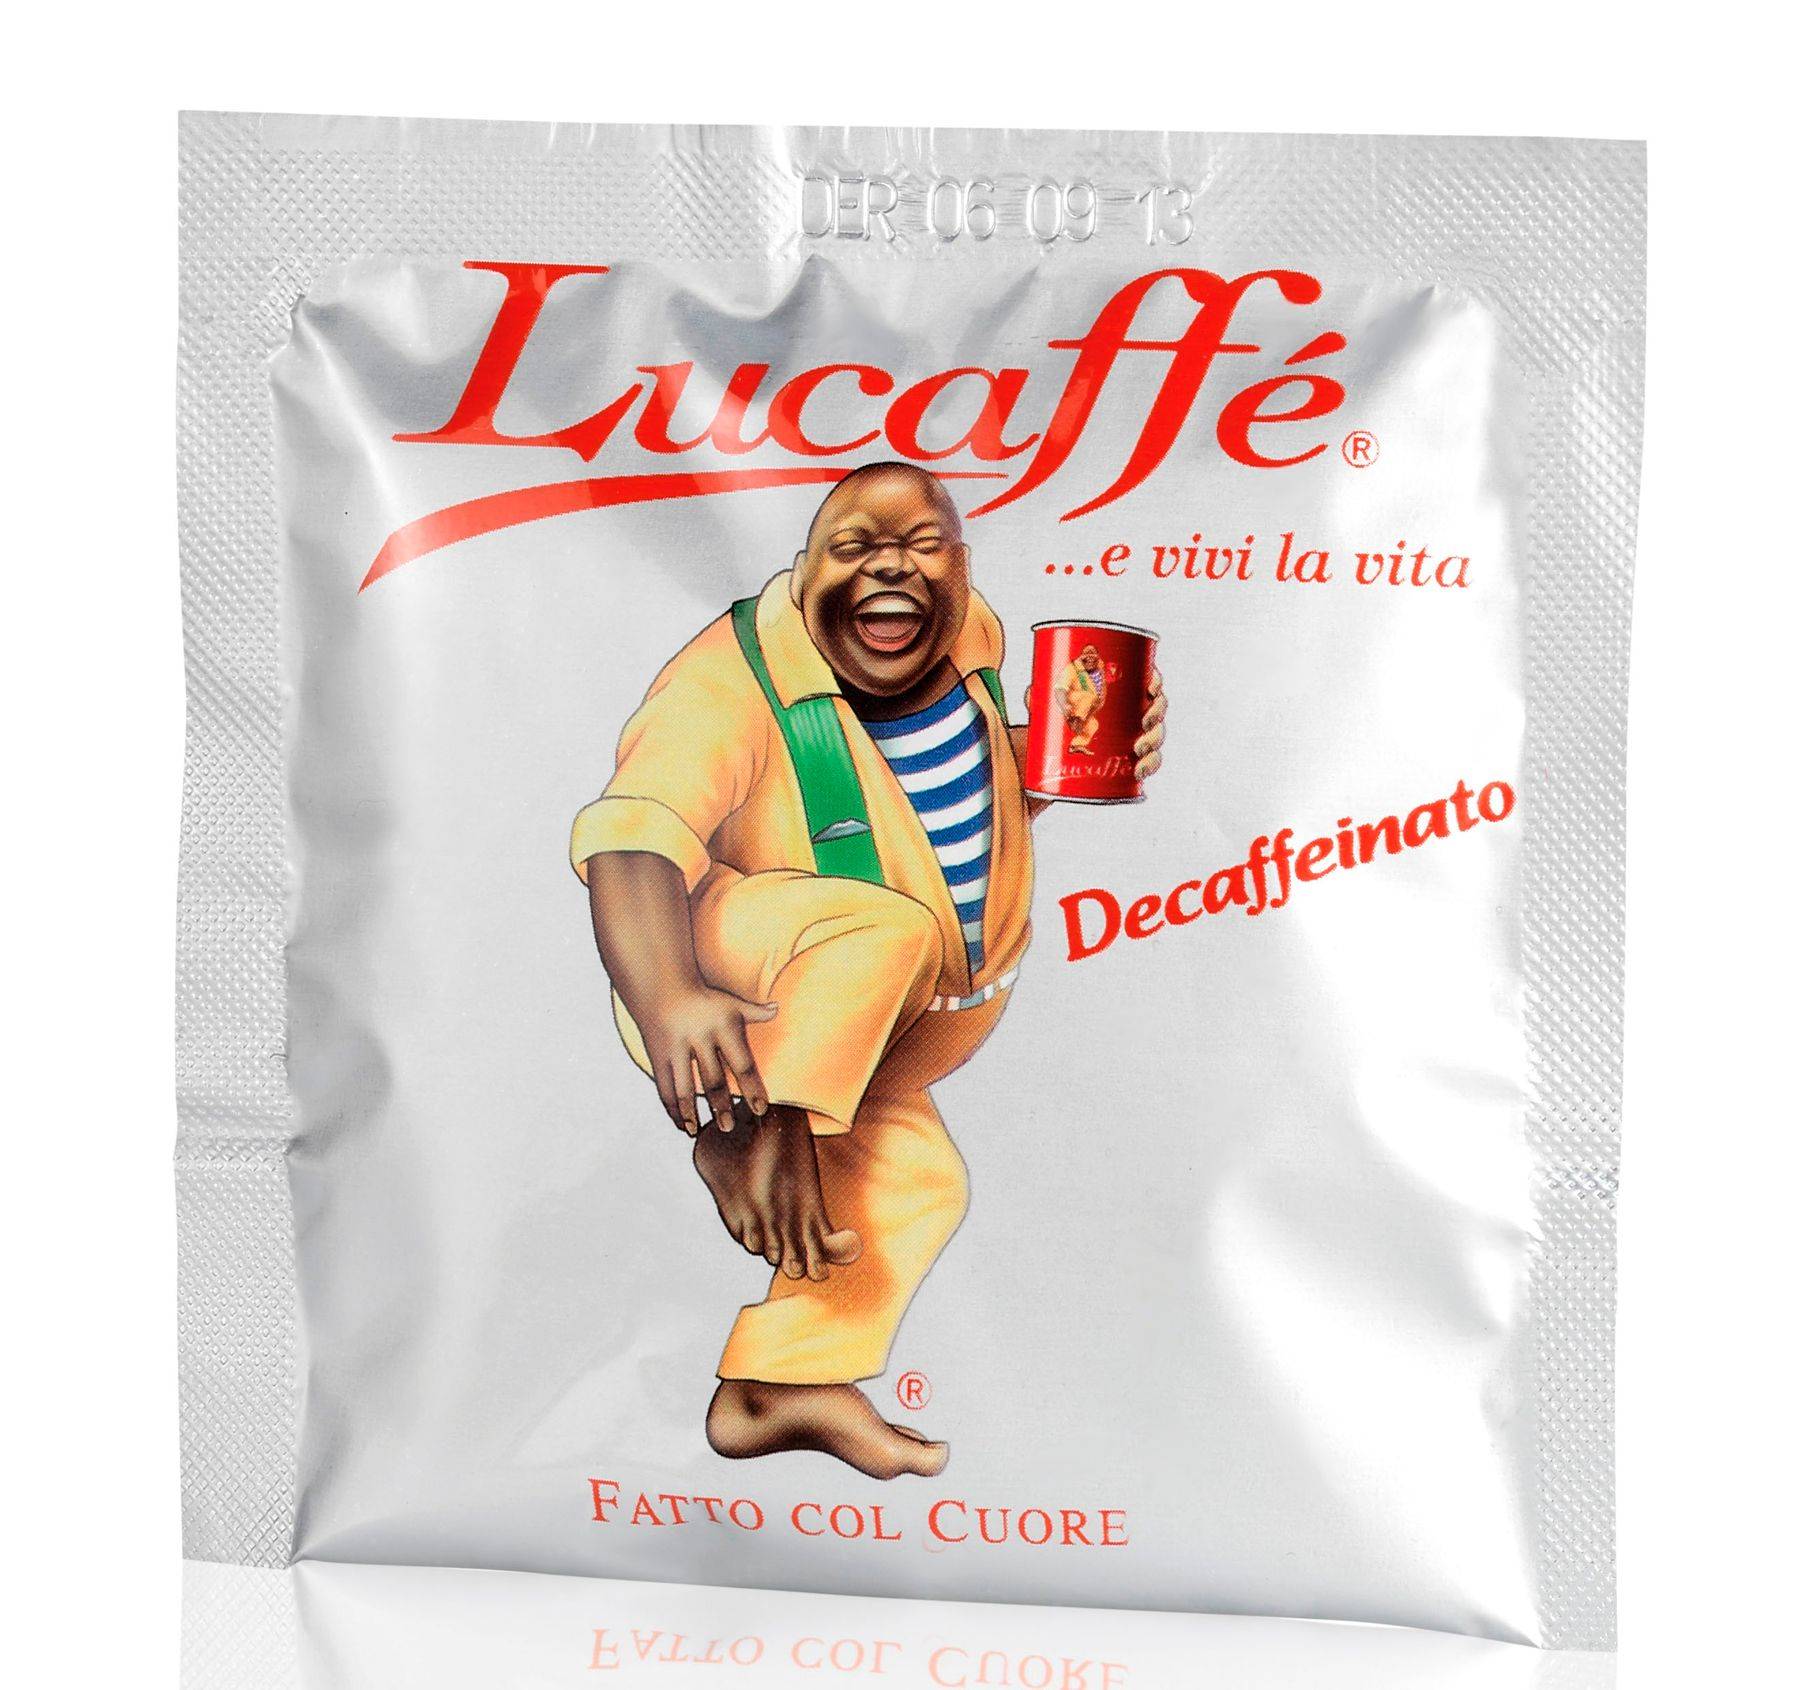 Оригинальный кофе Lucaffe из Италии